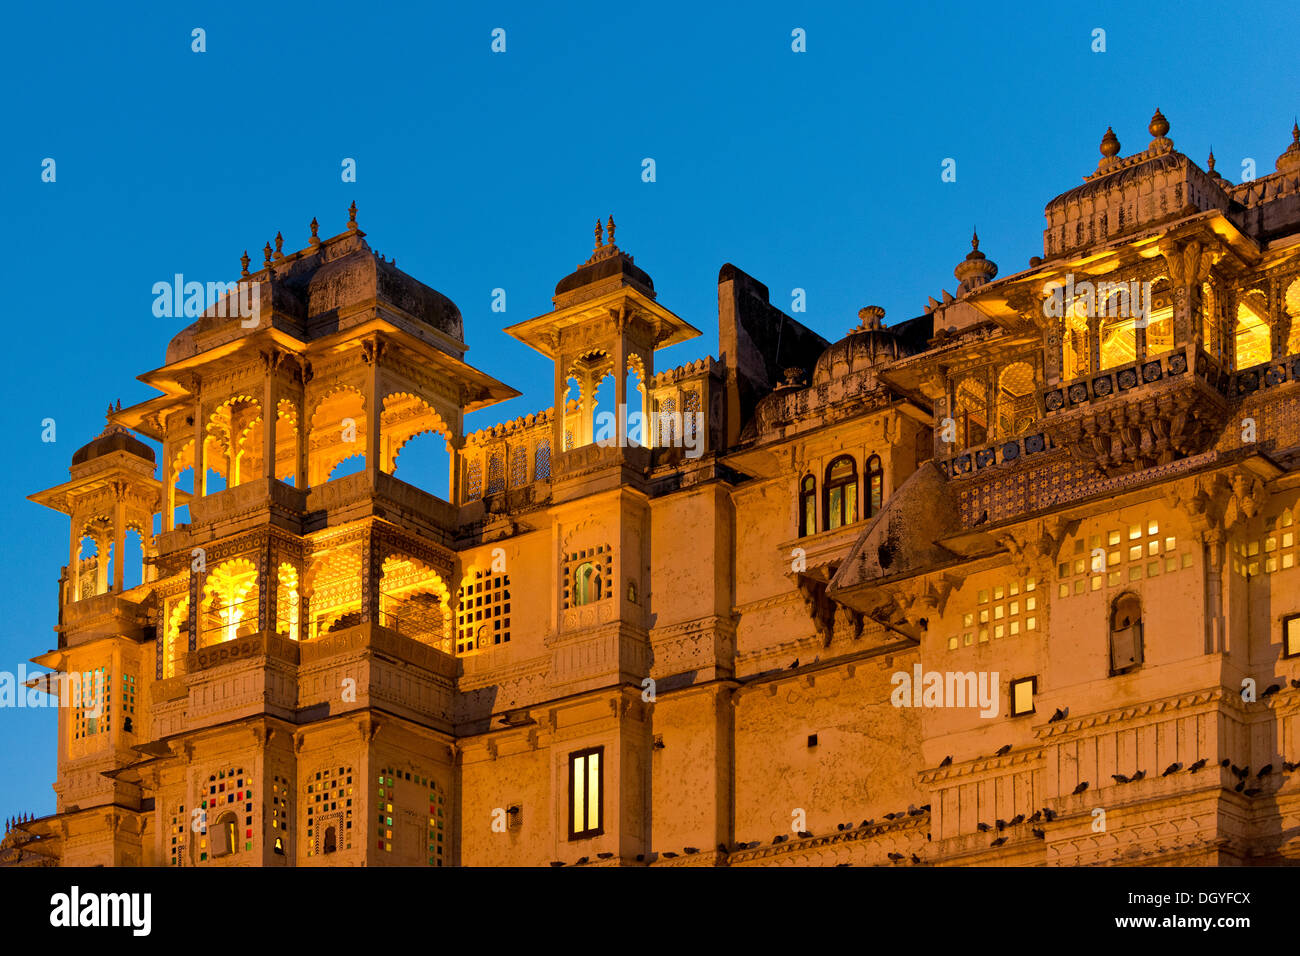 Ville illuminée Palais du Maharana d'Udaipur, Udaipur, Rajasthan, Inde Banque D'Images